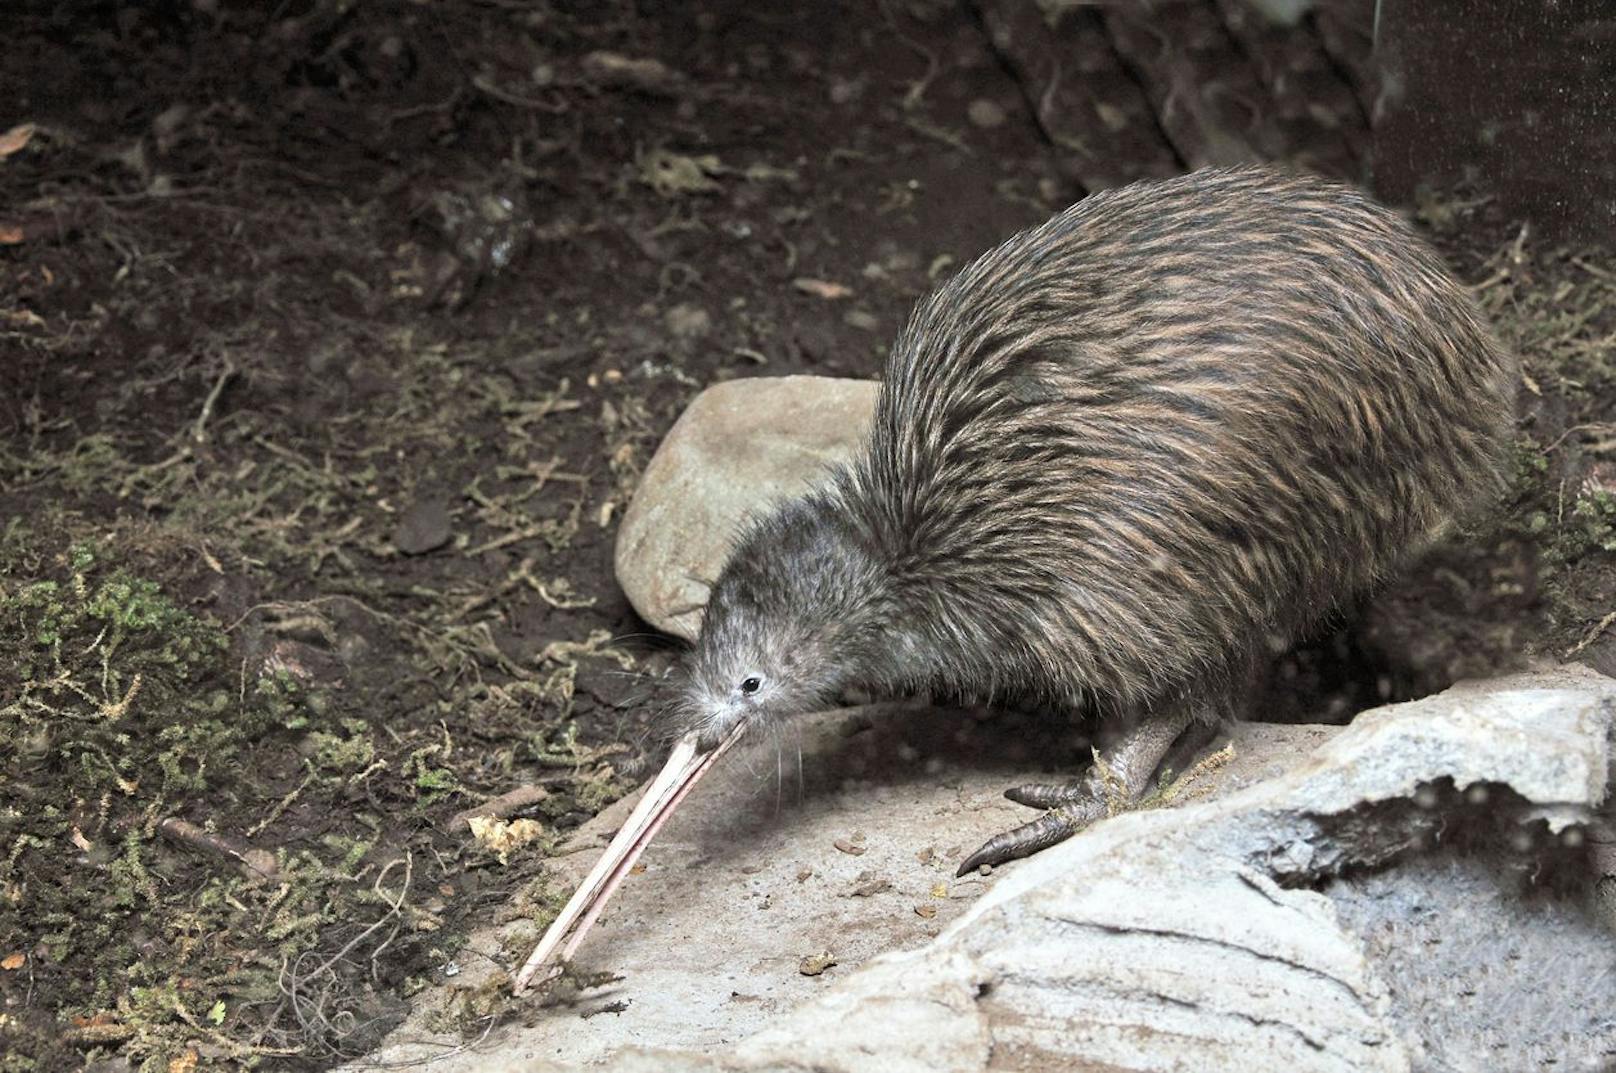 In der Finsternix orientieren sich Kiwis mit einem - für Vögel sehr ungewöhnlichen - sehr gut ausgeprägten Geruchssinn und Gehör.